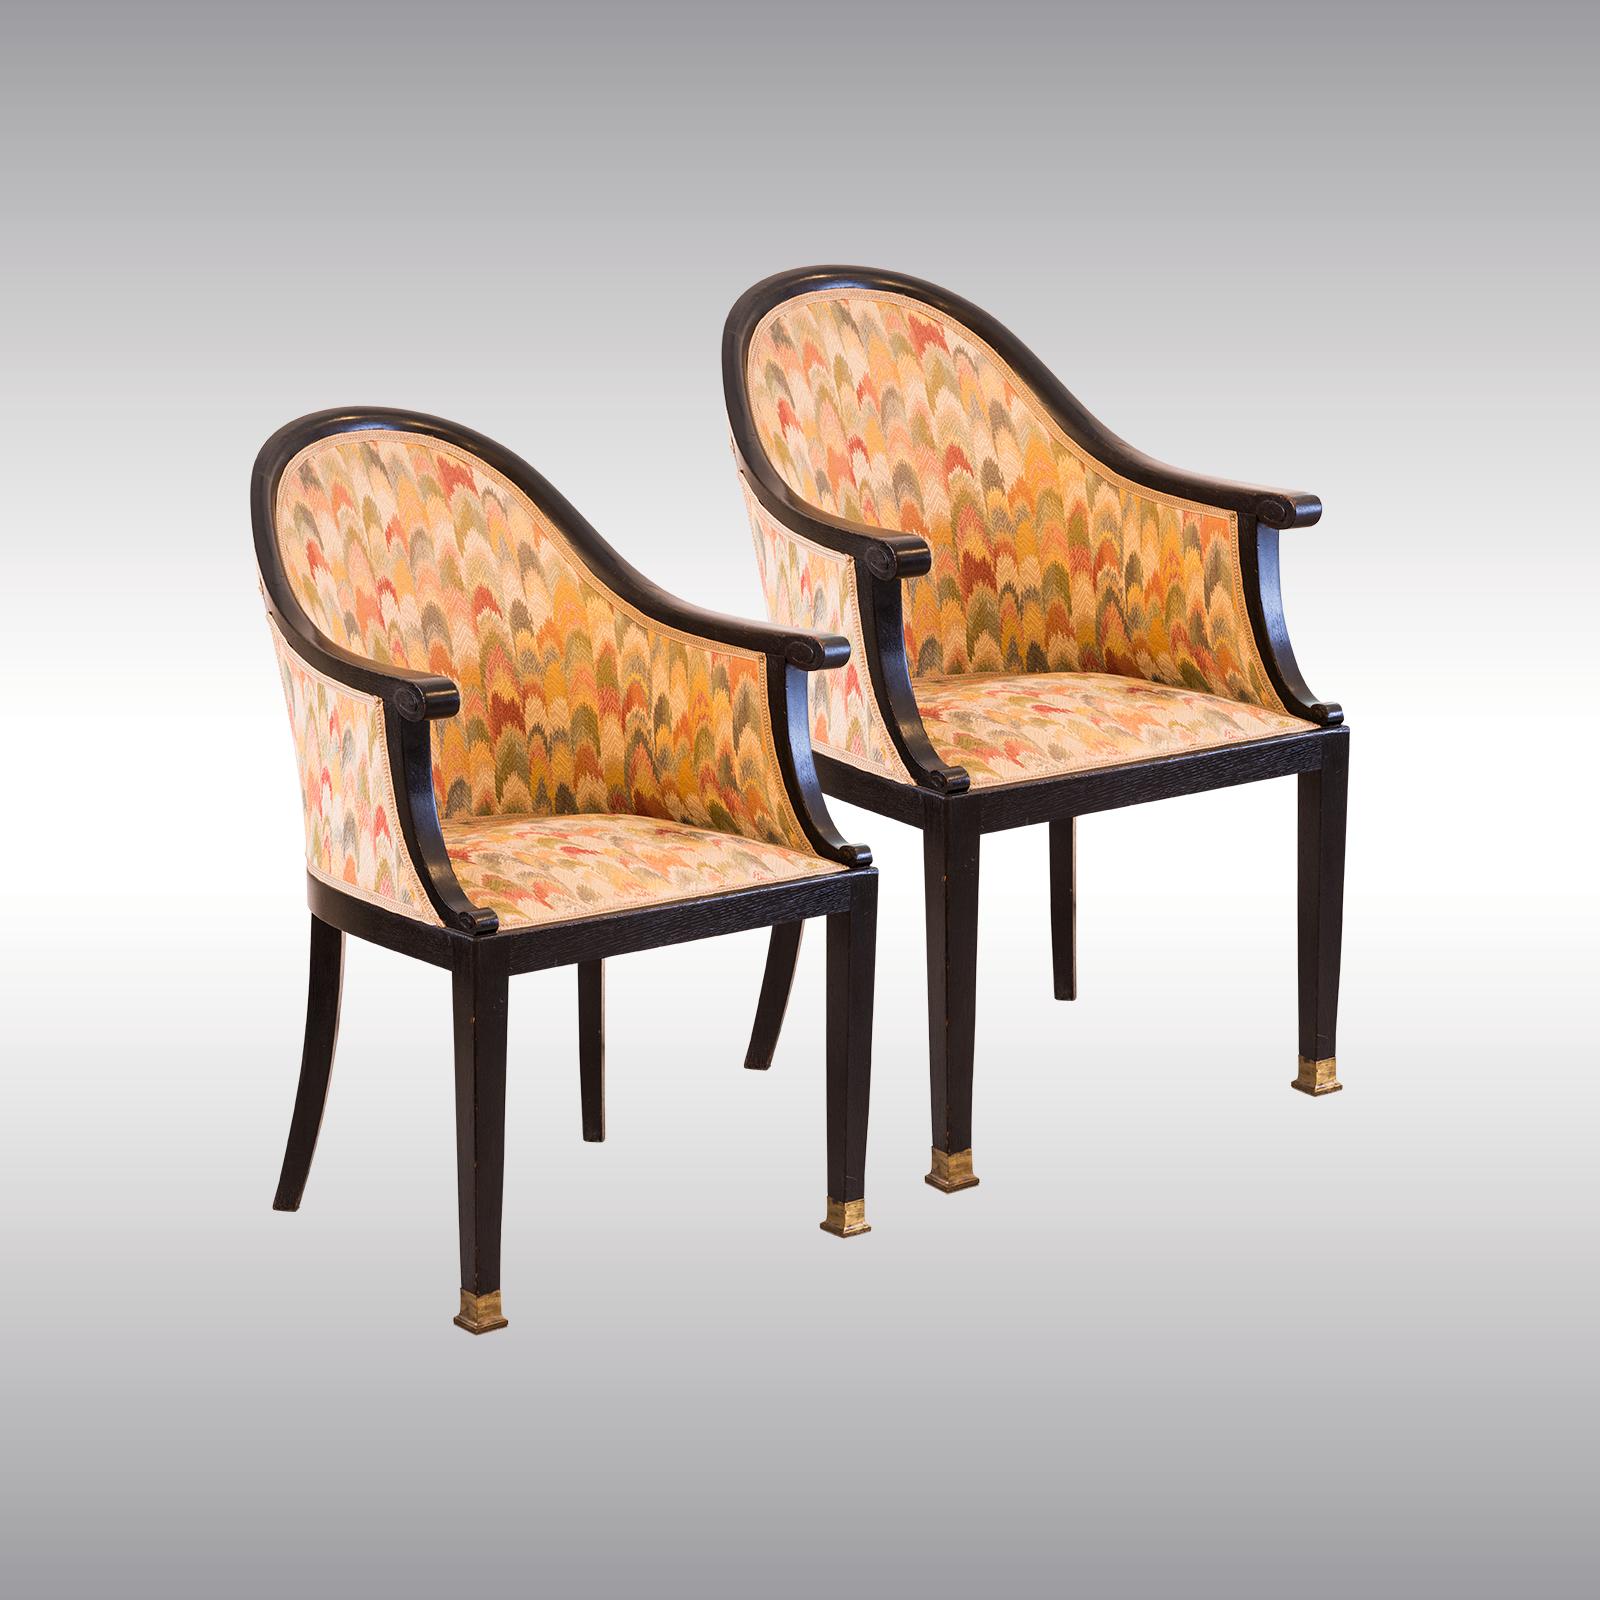 Chaises très élégantes et confortables attribuées à Josef Hoffmann ou Otto Prutscher. A été rénové depuis un certain temps, le tissu est en partie taché. Peut être vendu séparément.

